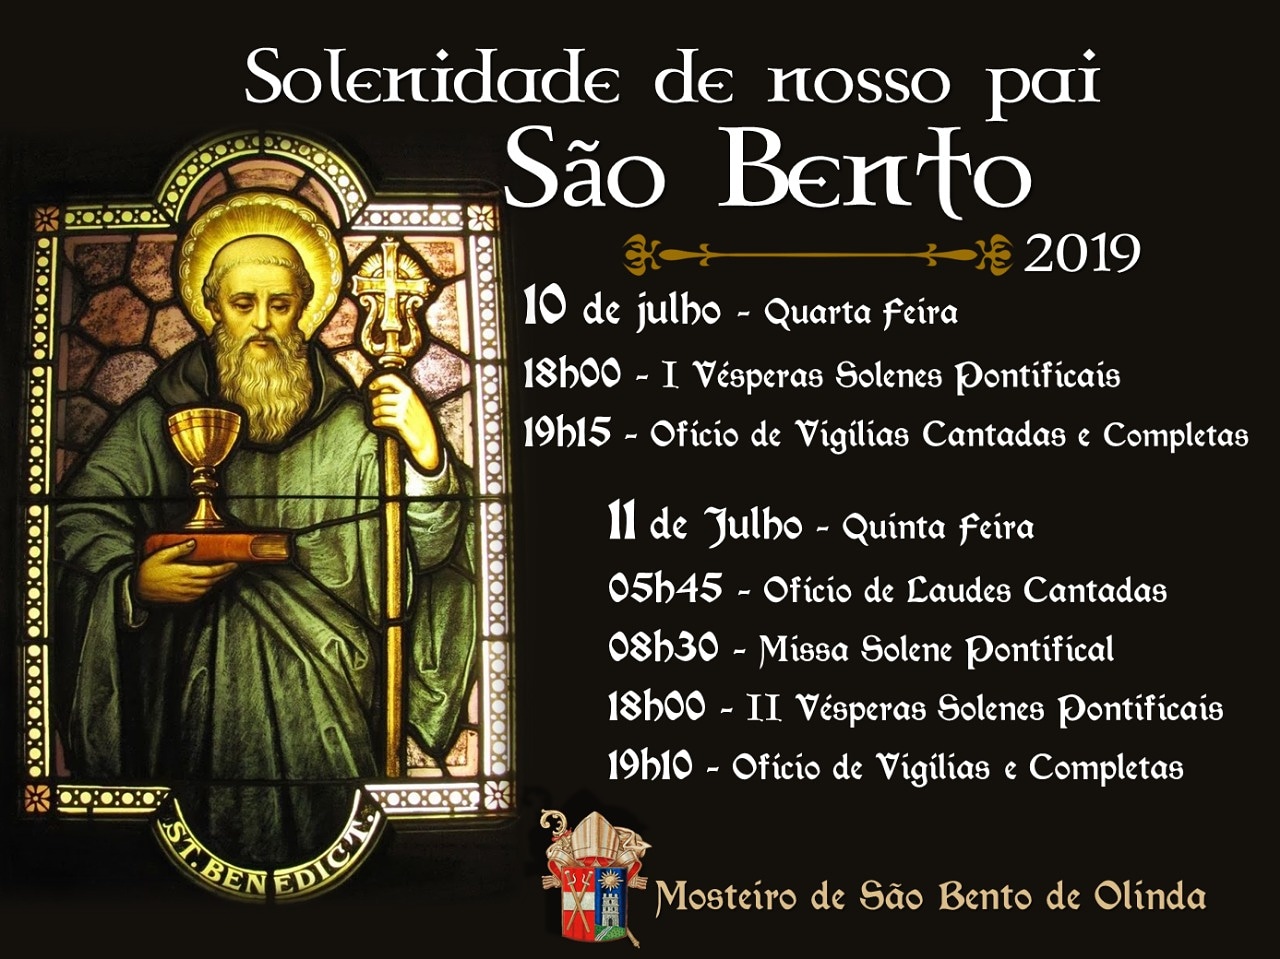 Mosteiro de São Bento convida para celebrações (10 e 11/07):